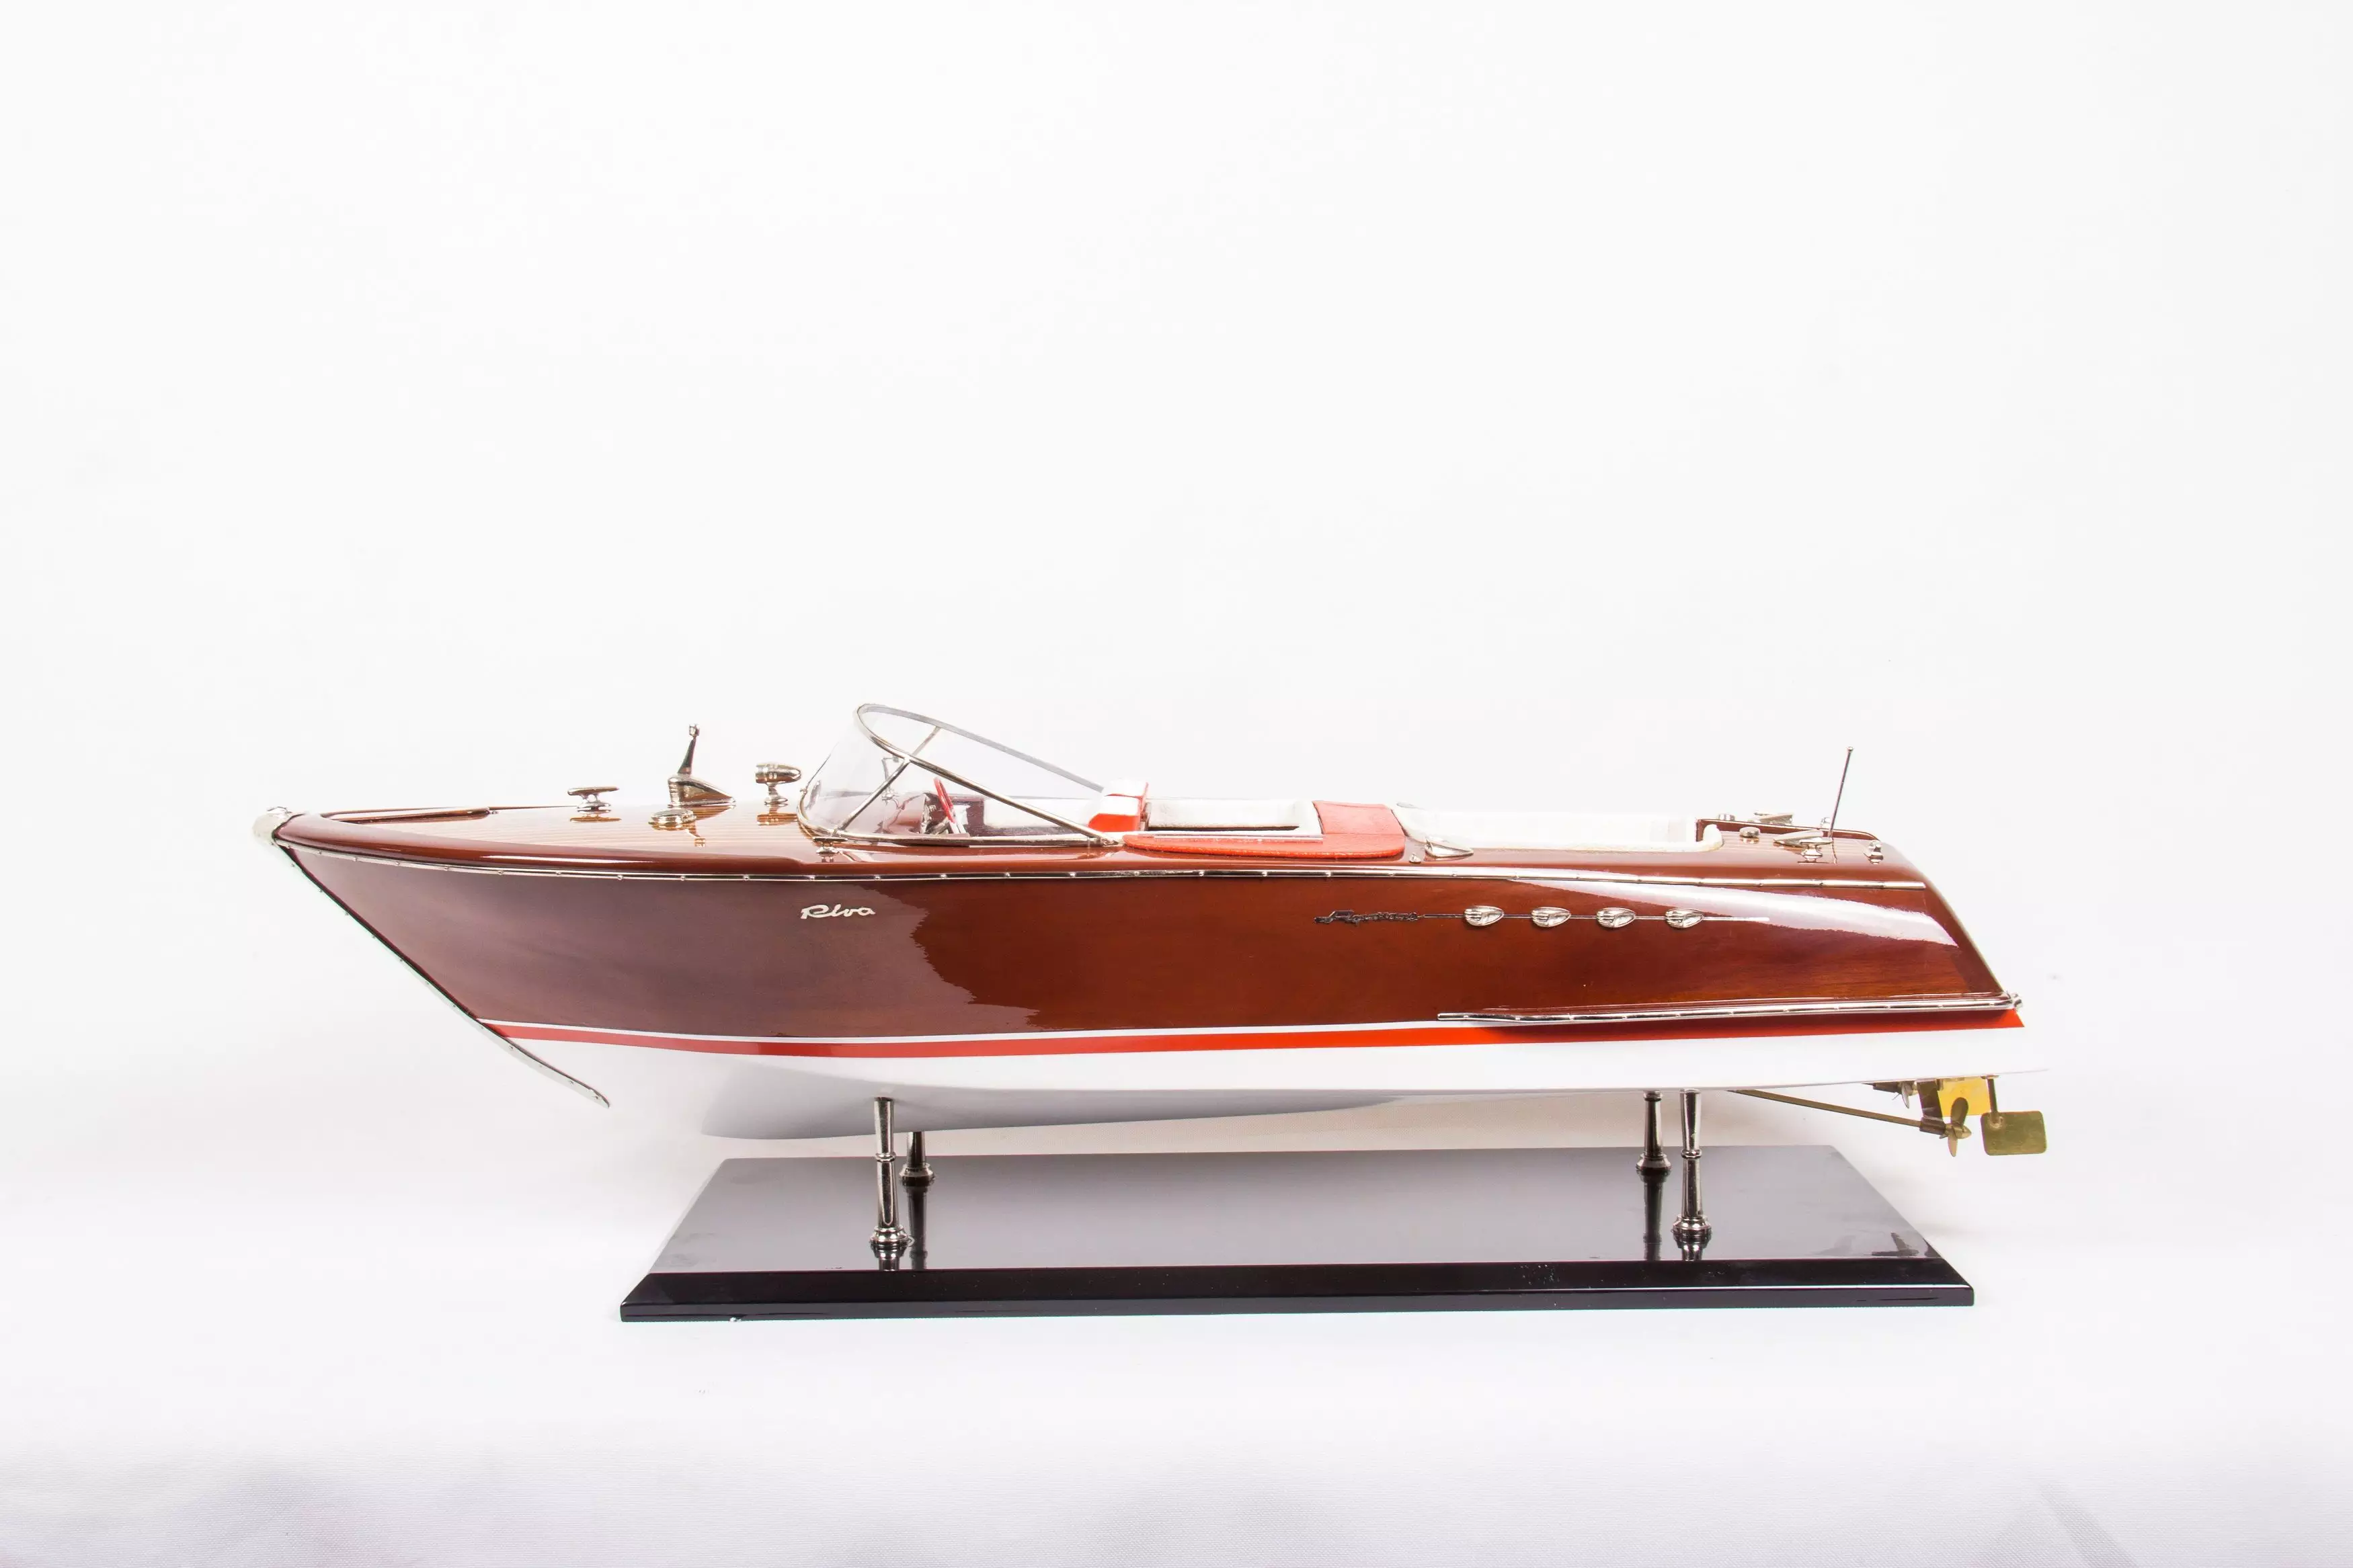 Super Riva Aquarama model boat (Distrazione)